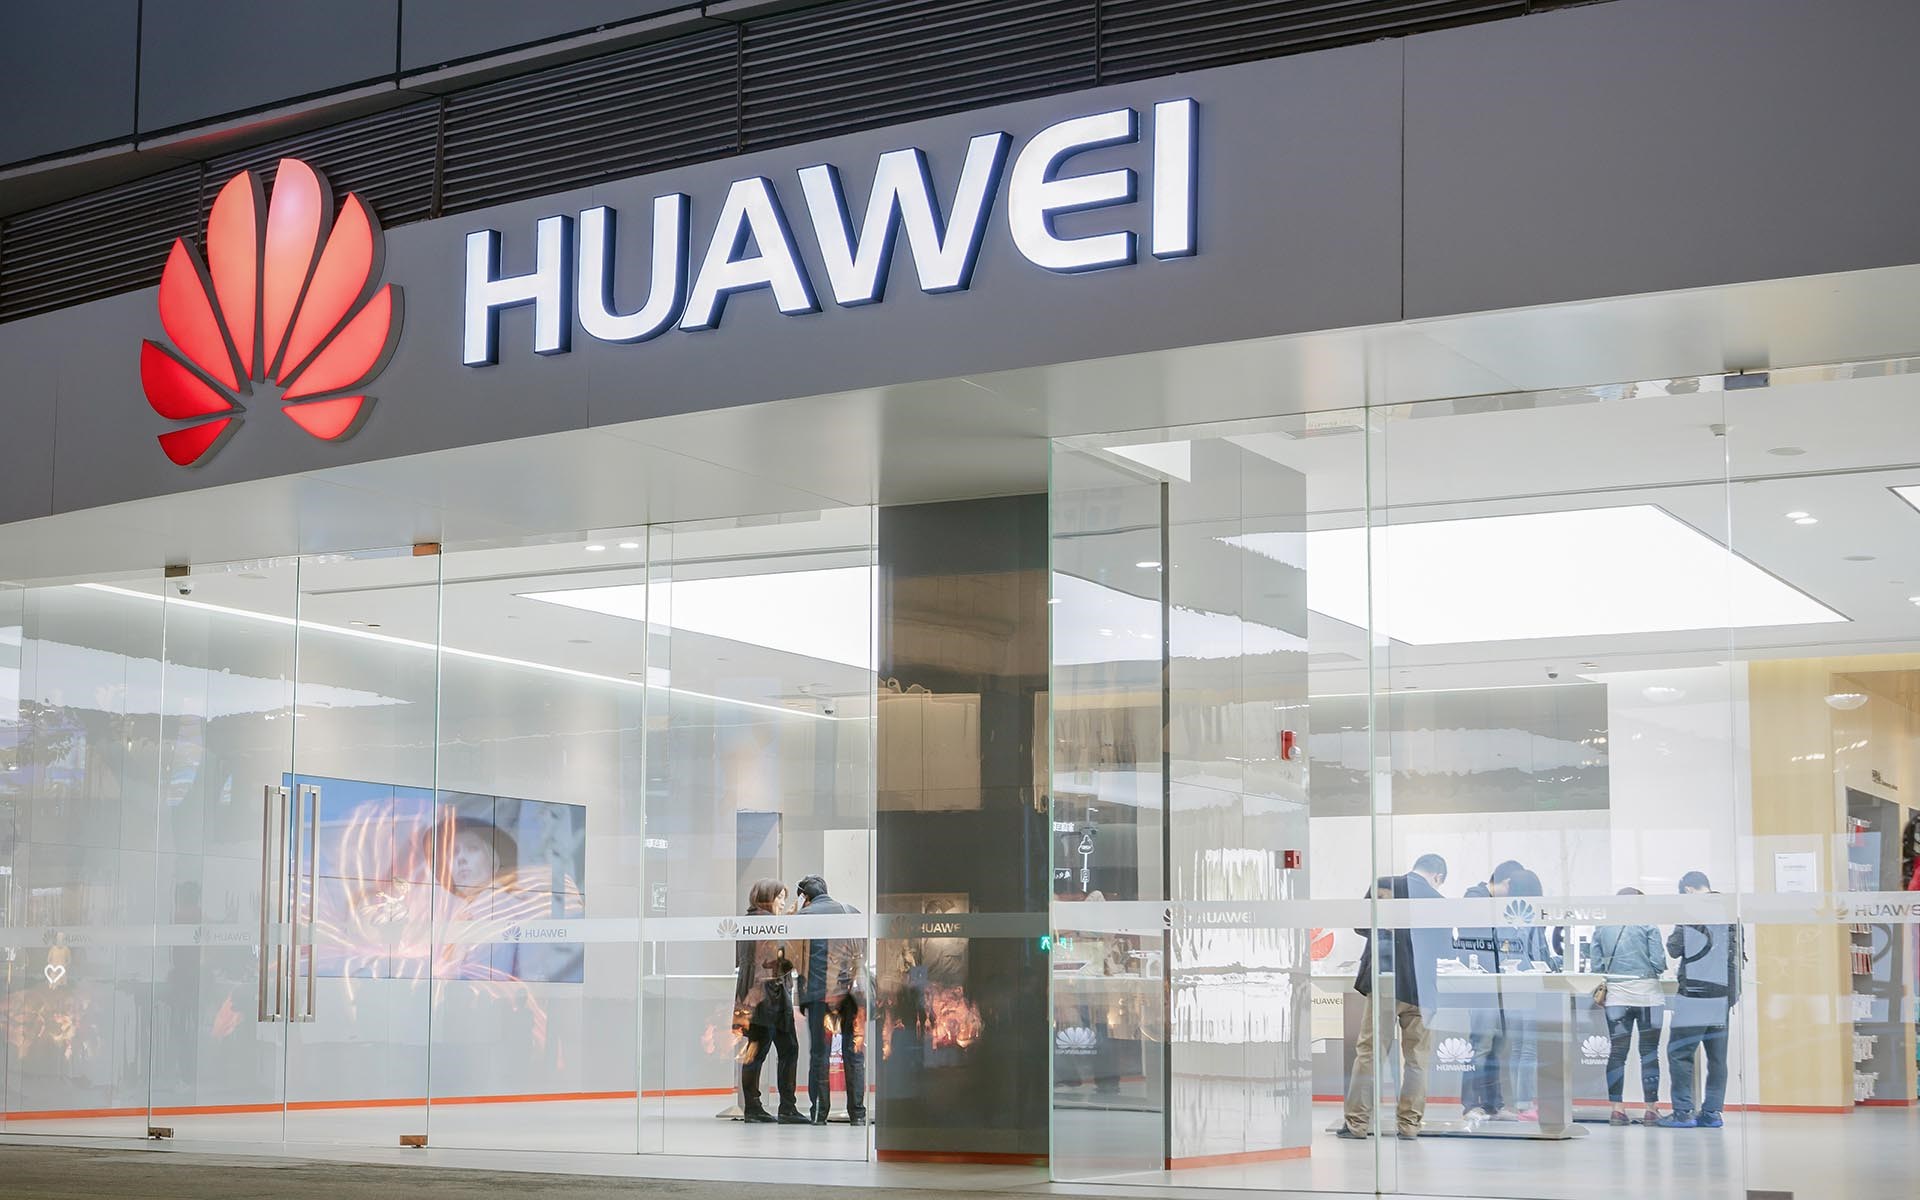 2021 yılında akıllı telefon pazarı kızışacak: Huawei ilk beşe giremeyebilir